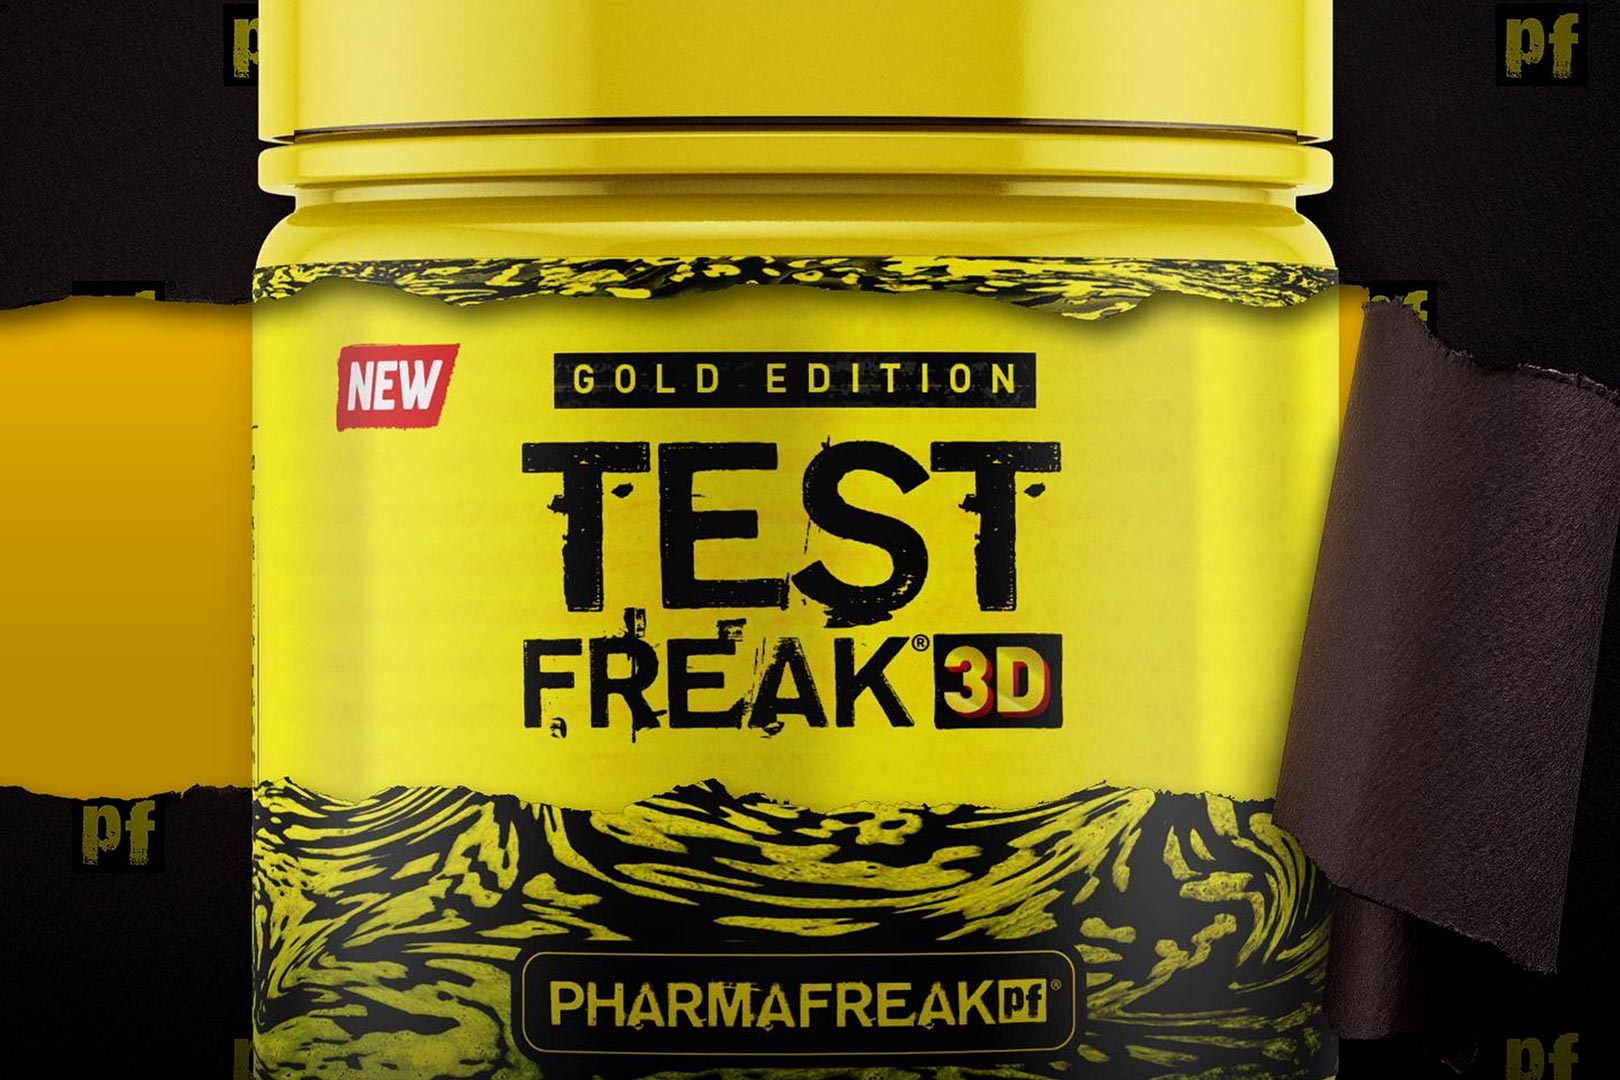 Sneak Peek At Test Freak 3d